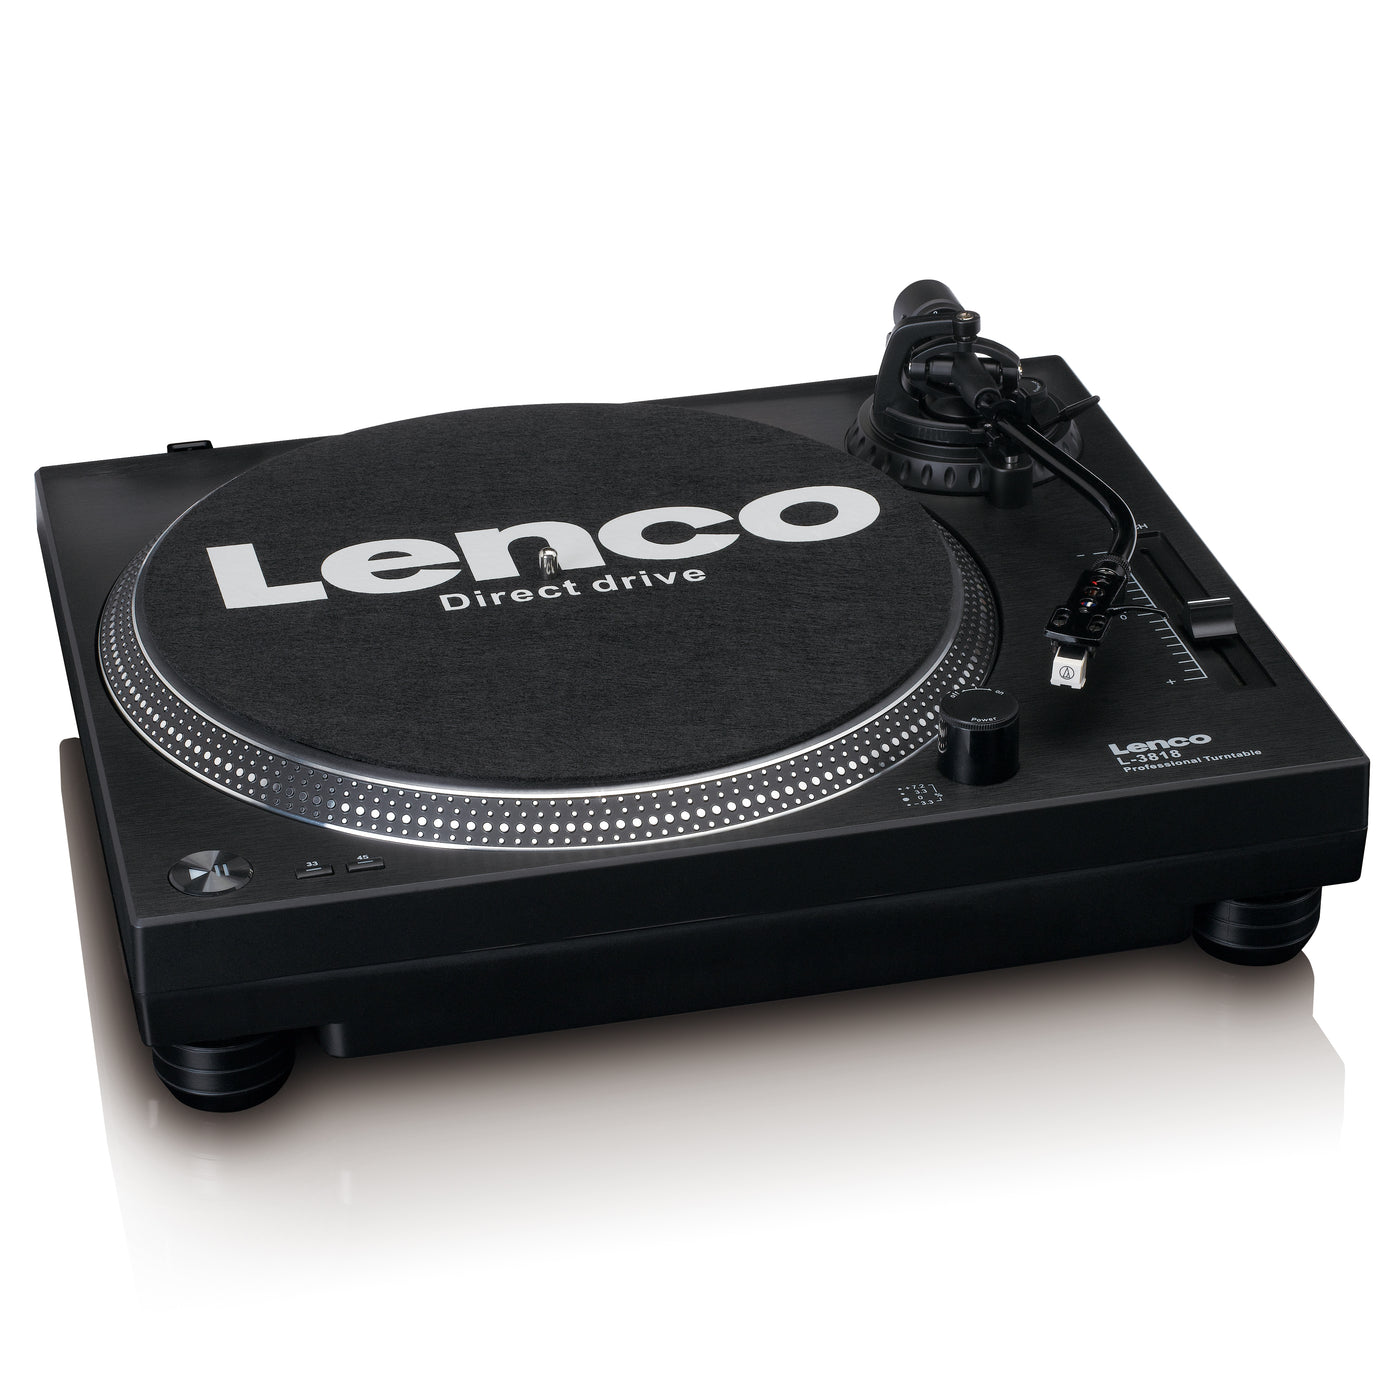 LENCO L-3818BK - Tourne-disque à entraînement direct avec encodage USB/PC - Noir